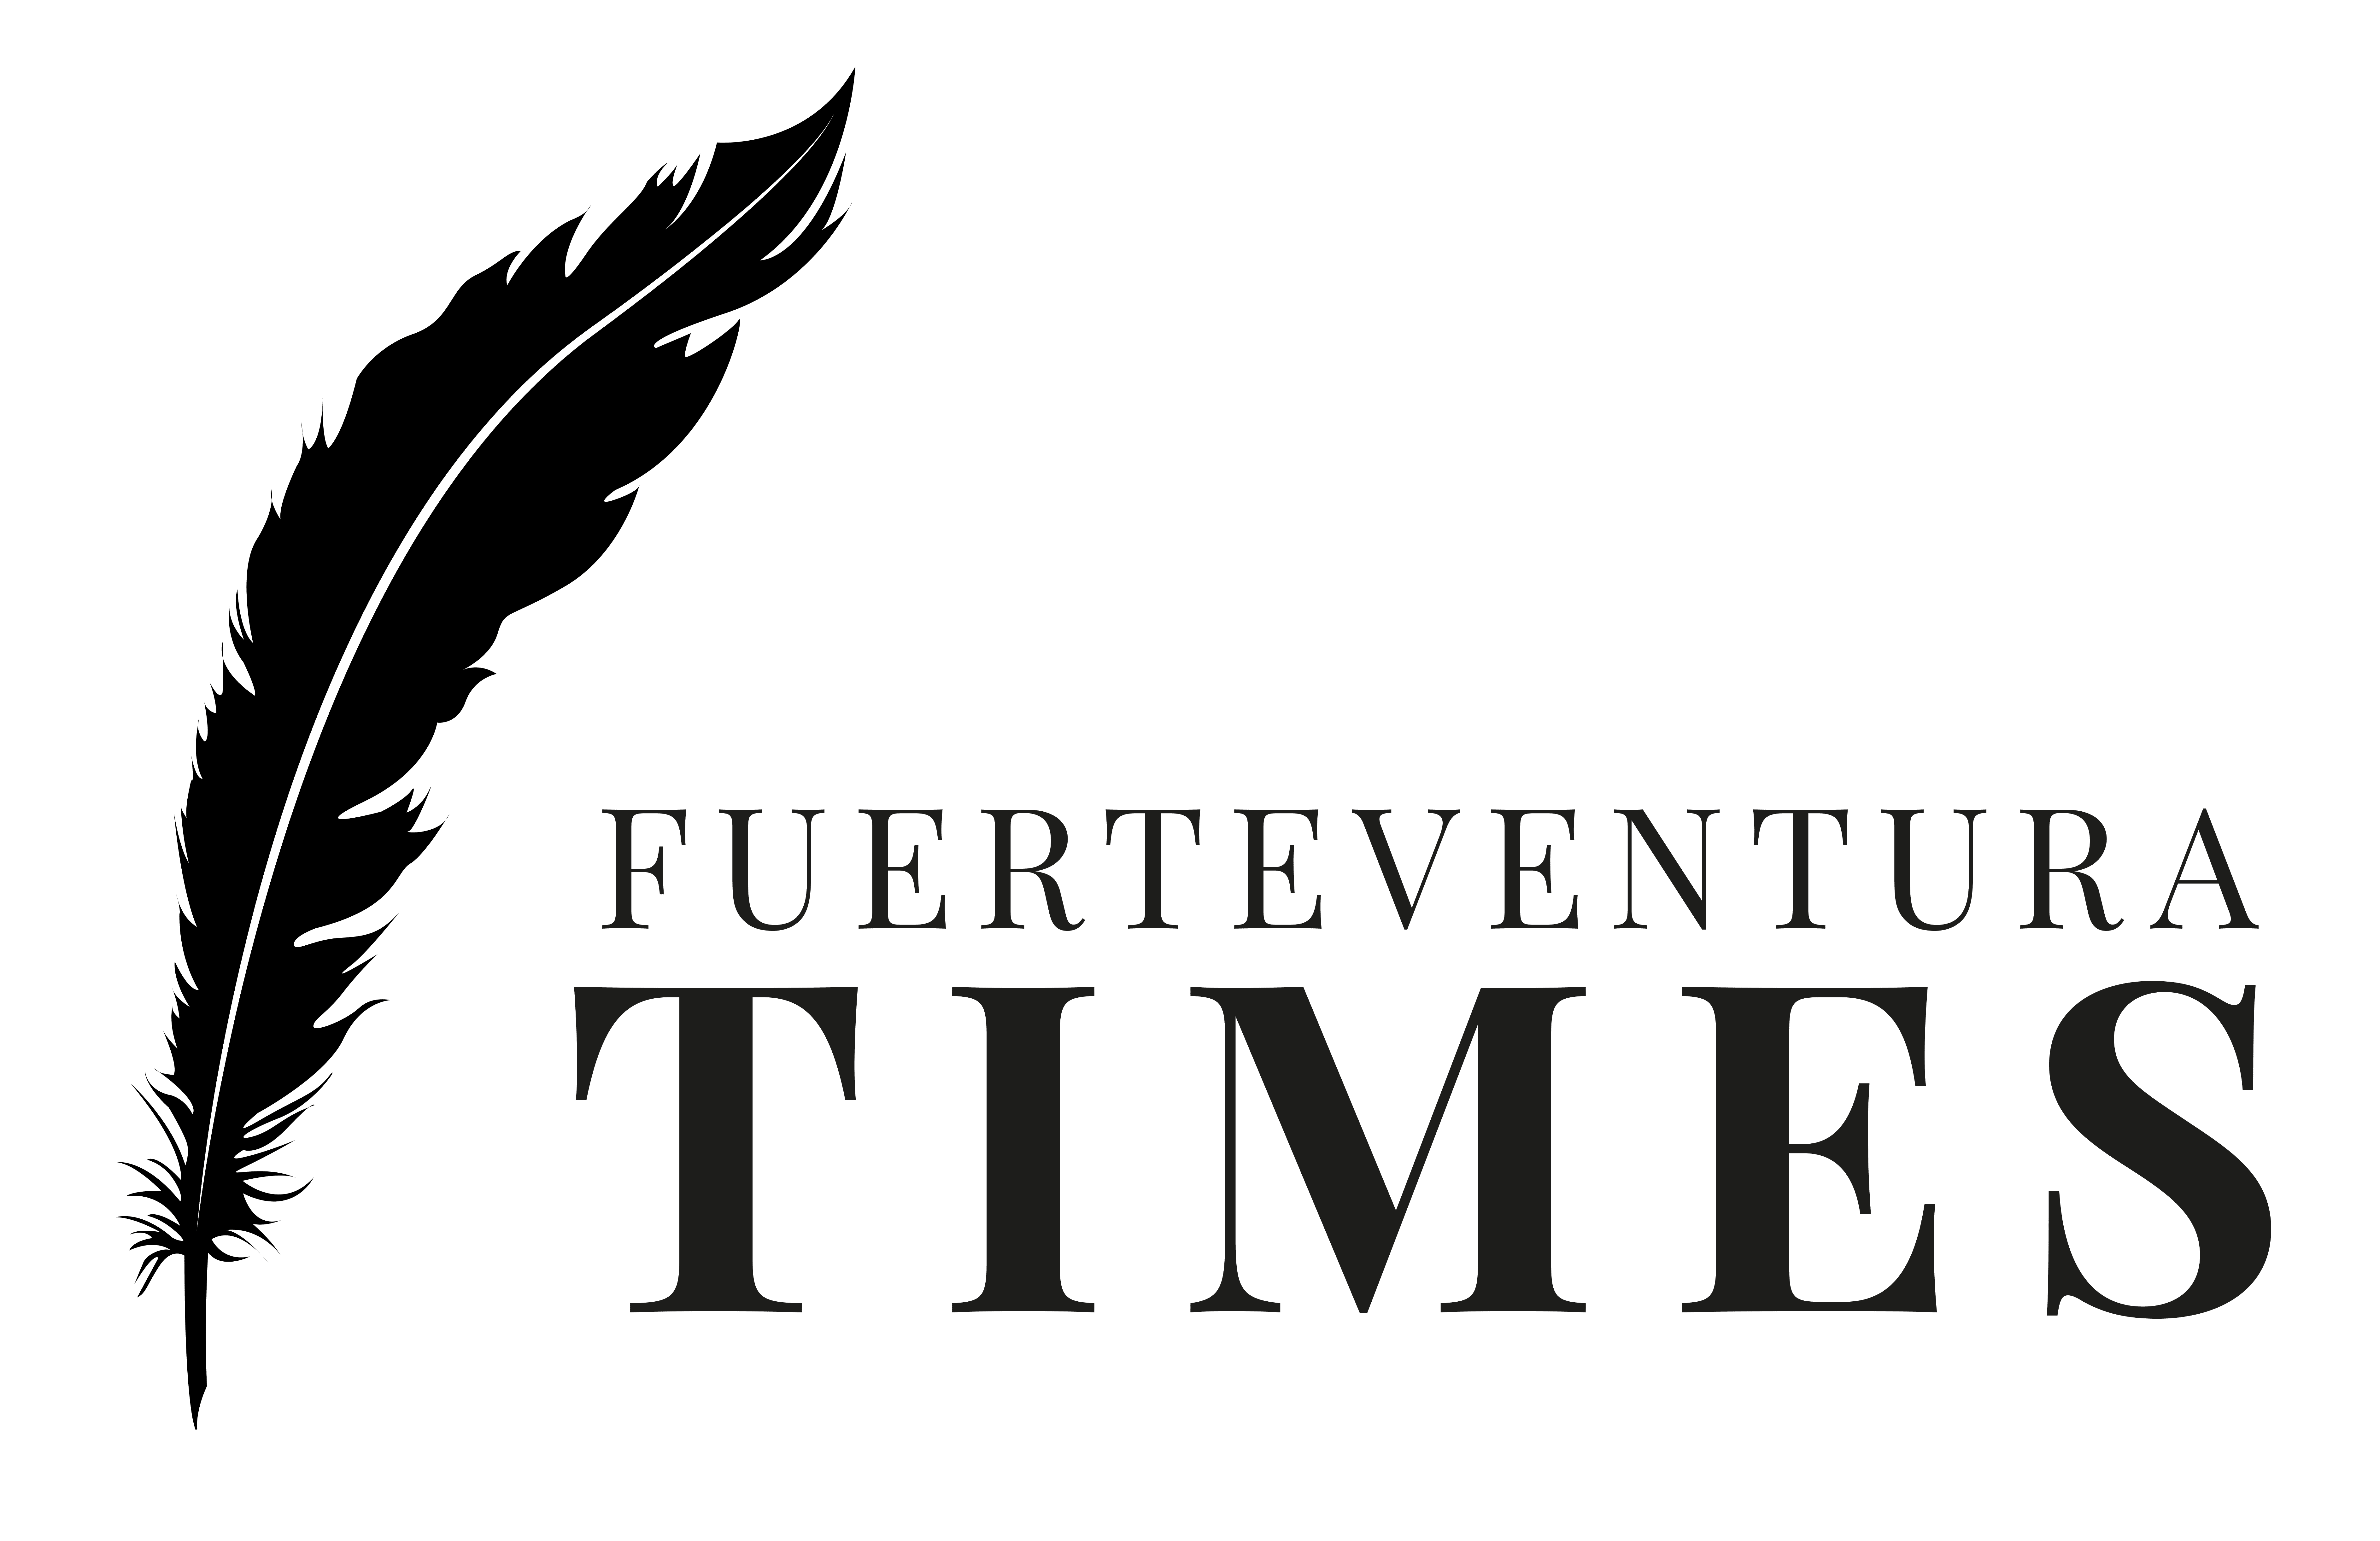 Fuerteventura times logo